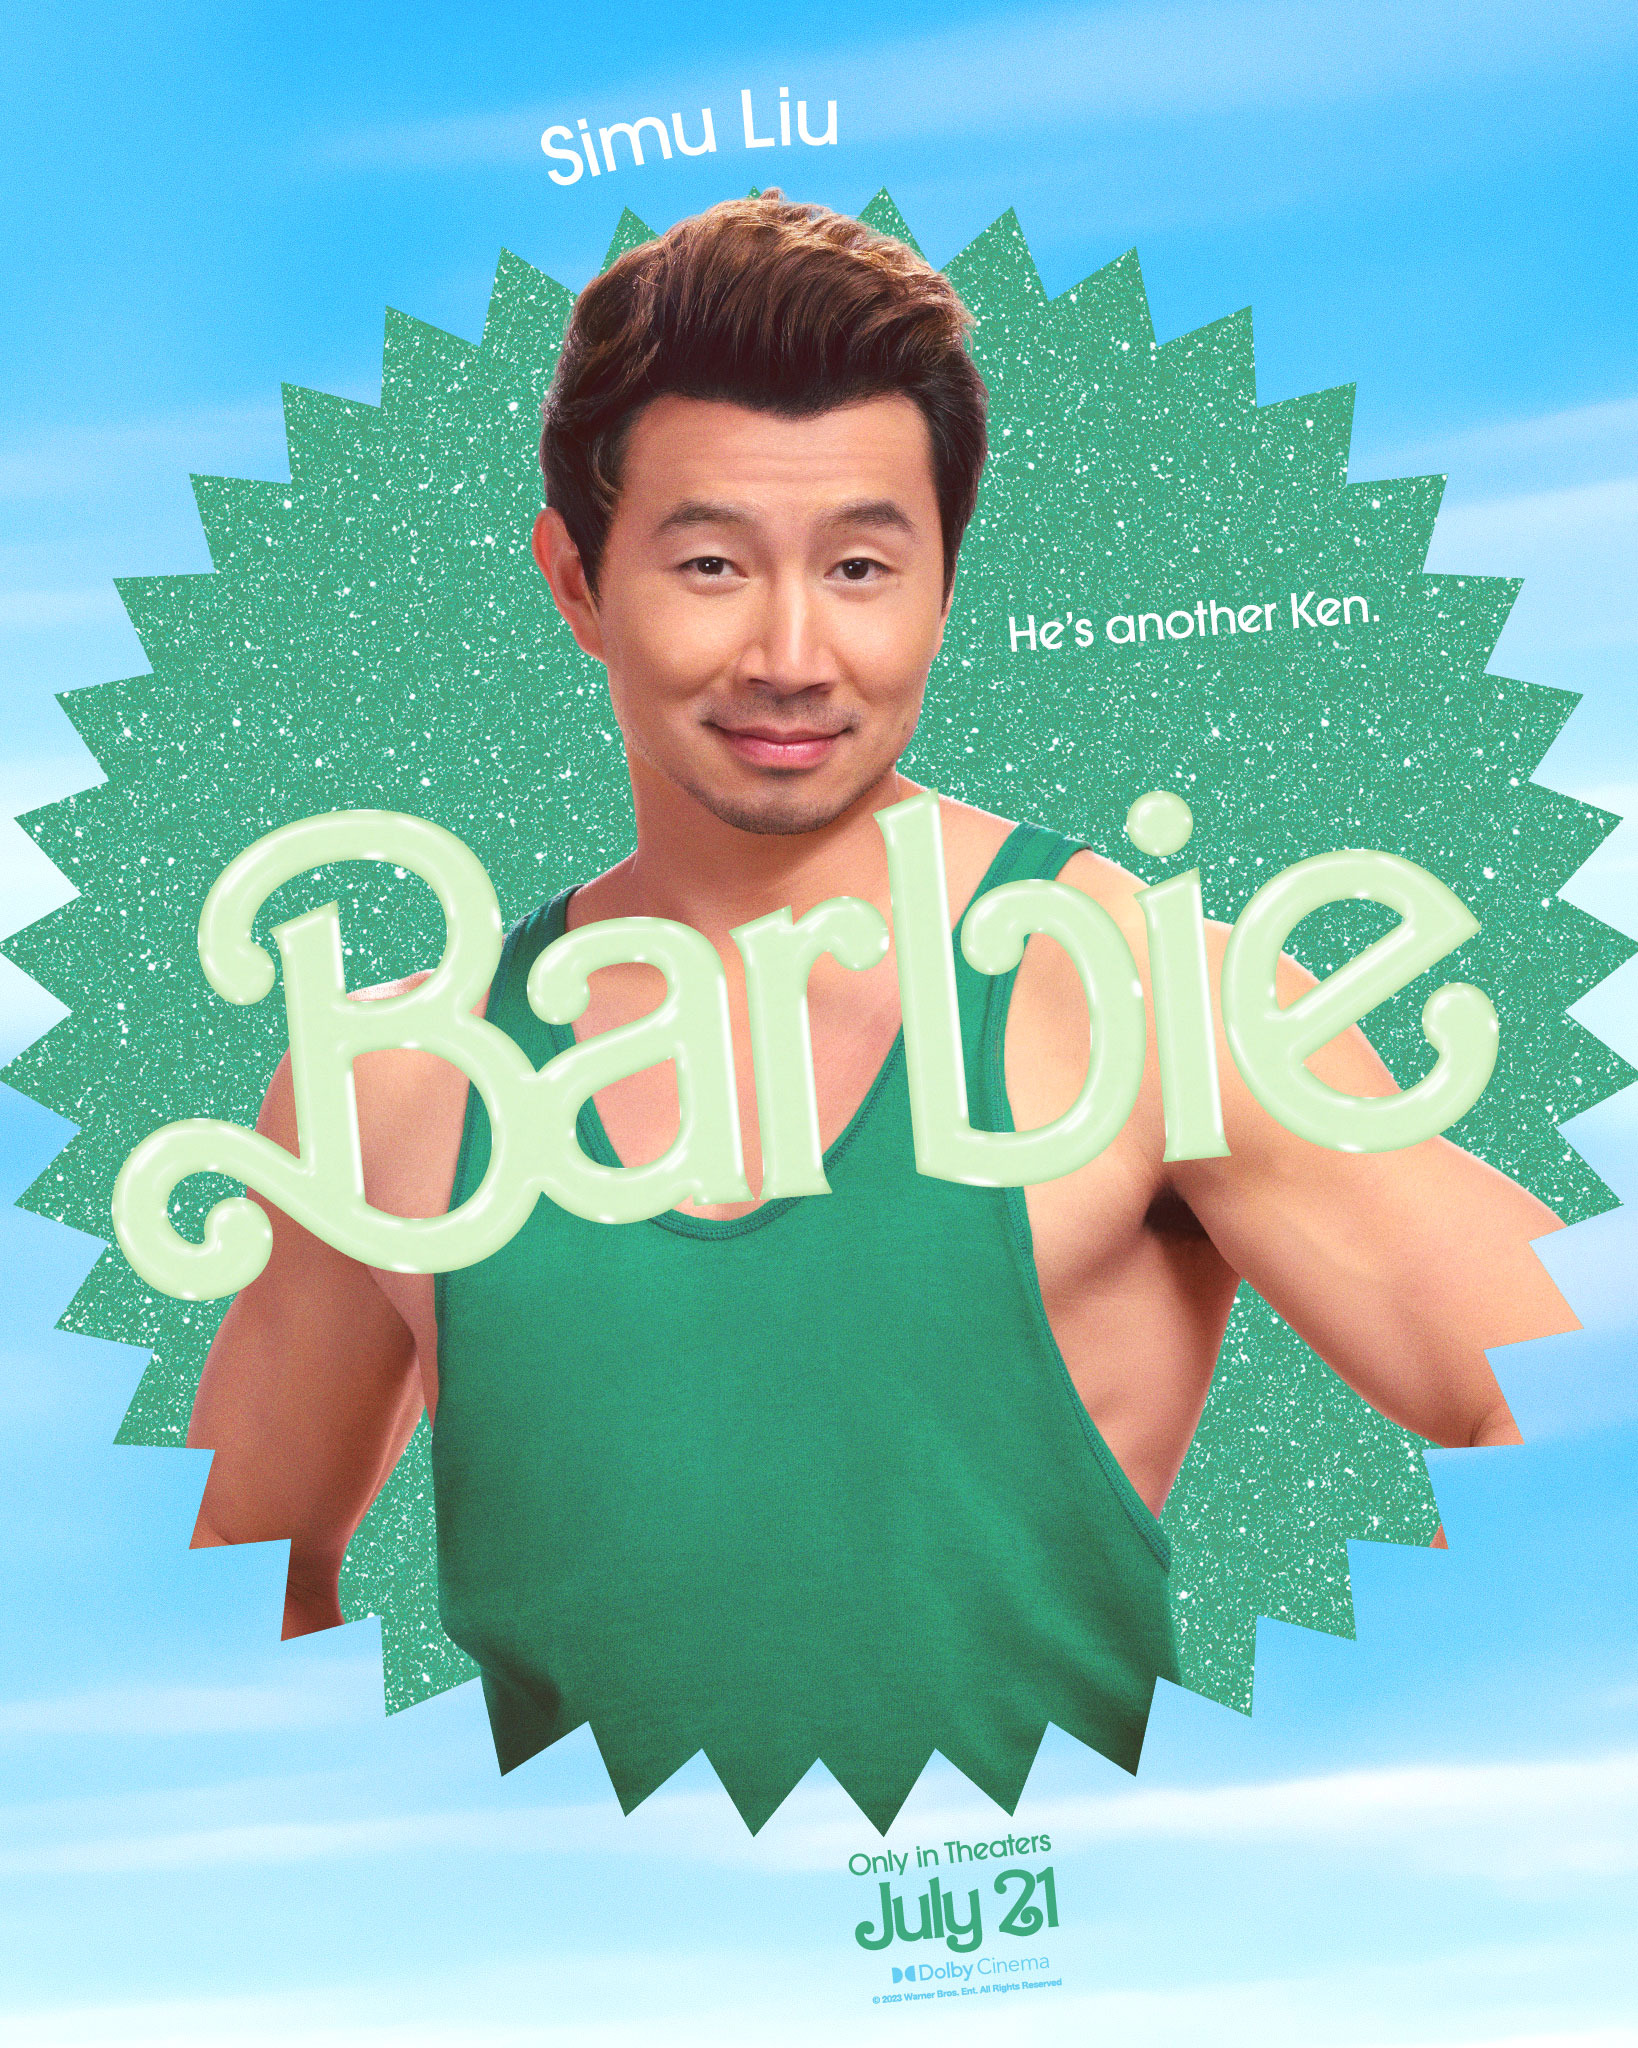 barbie-2023-poster-simu-liu-barbie-2023-photo-44883458